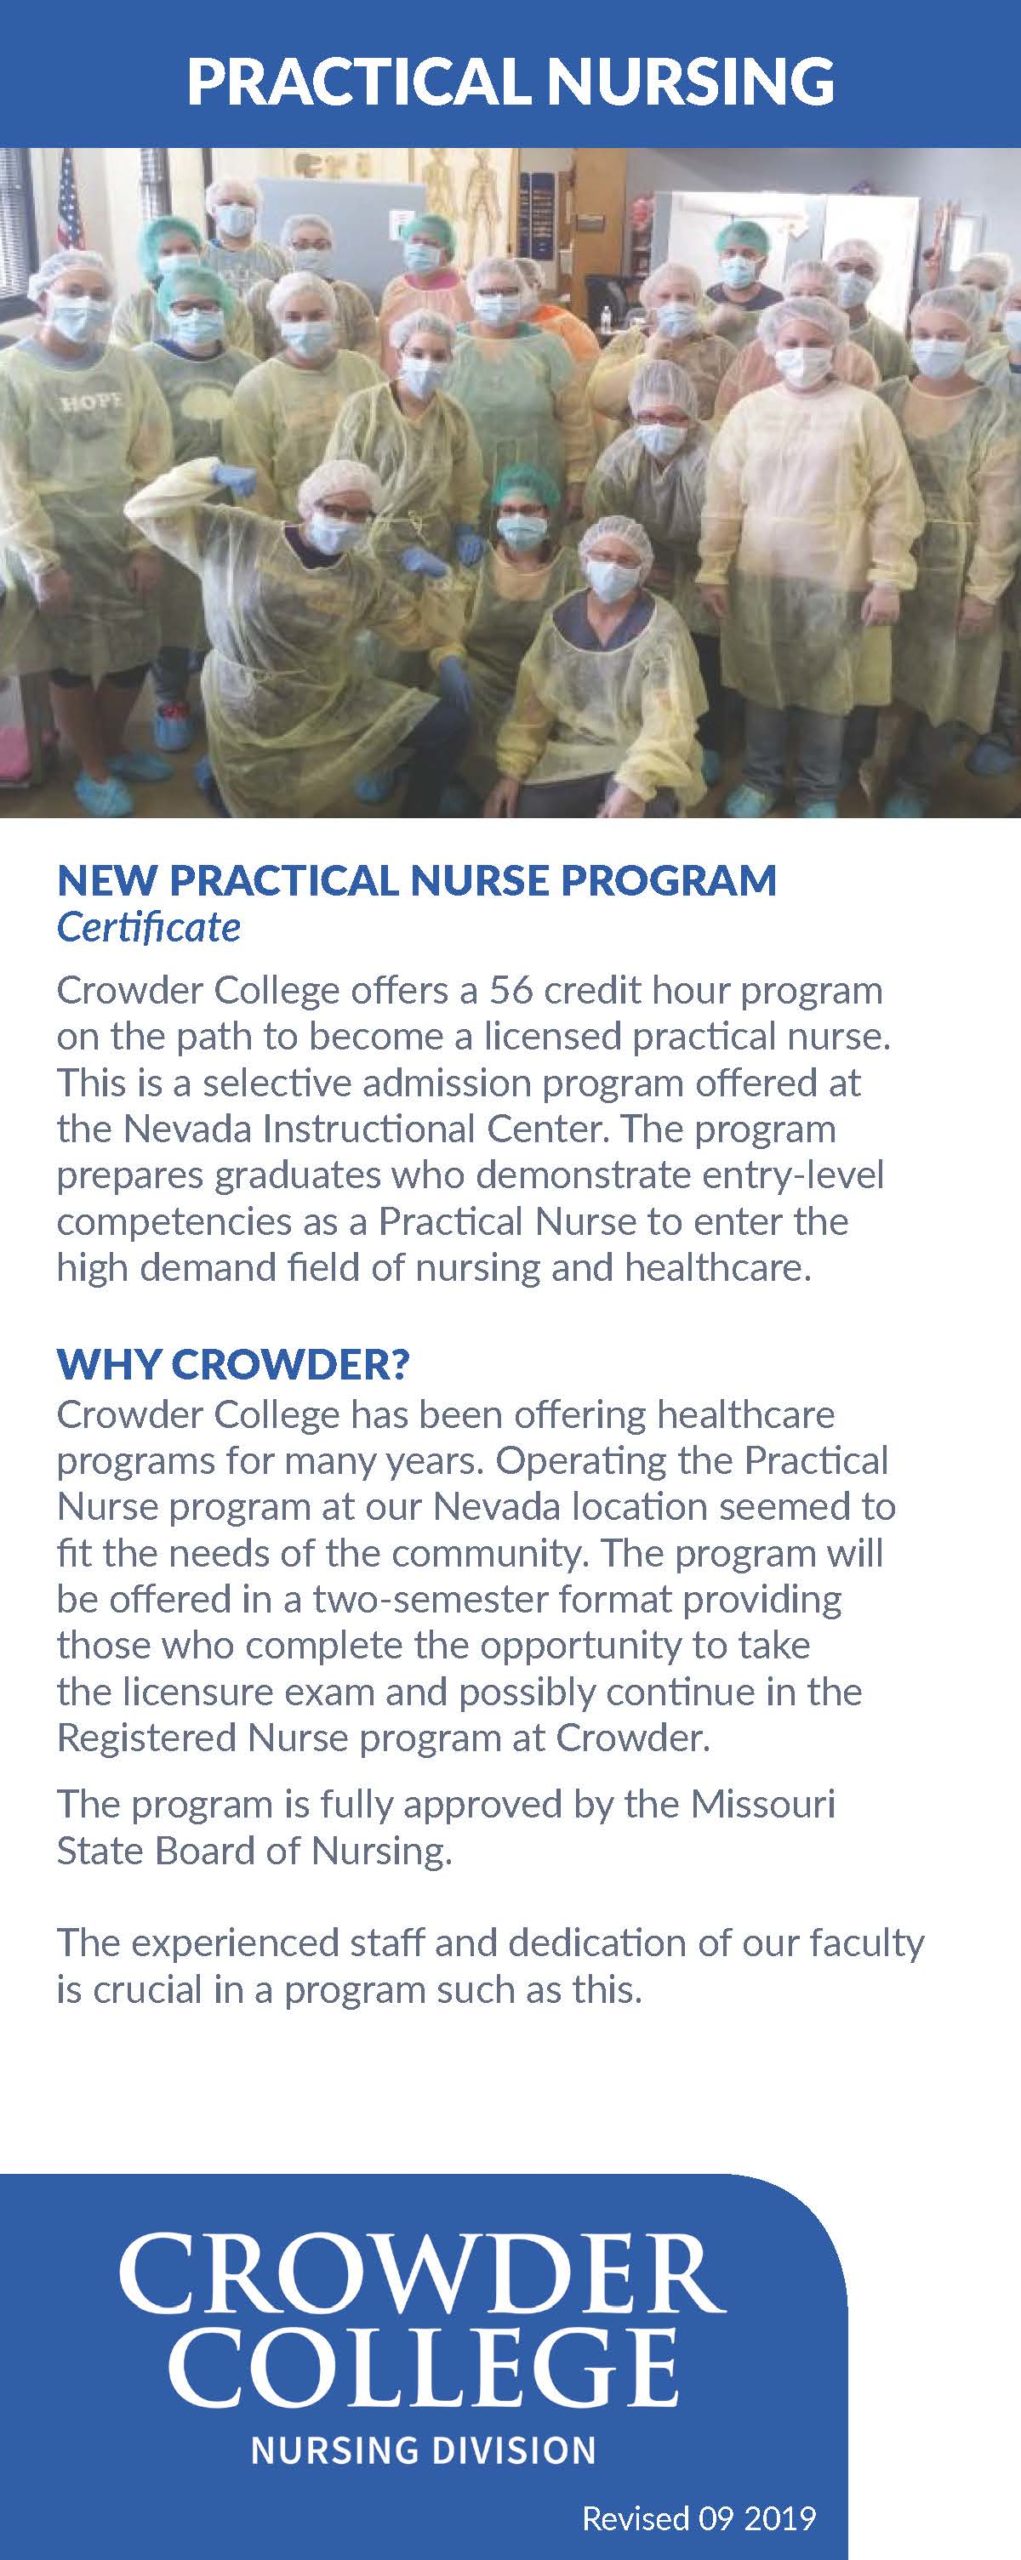 Crowder College LPN program information